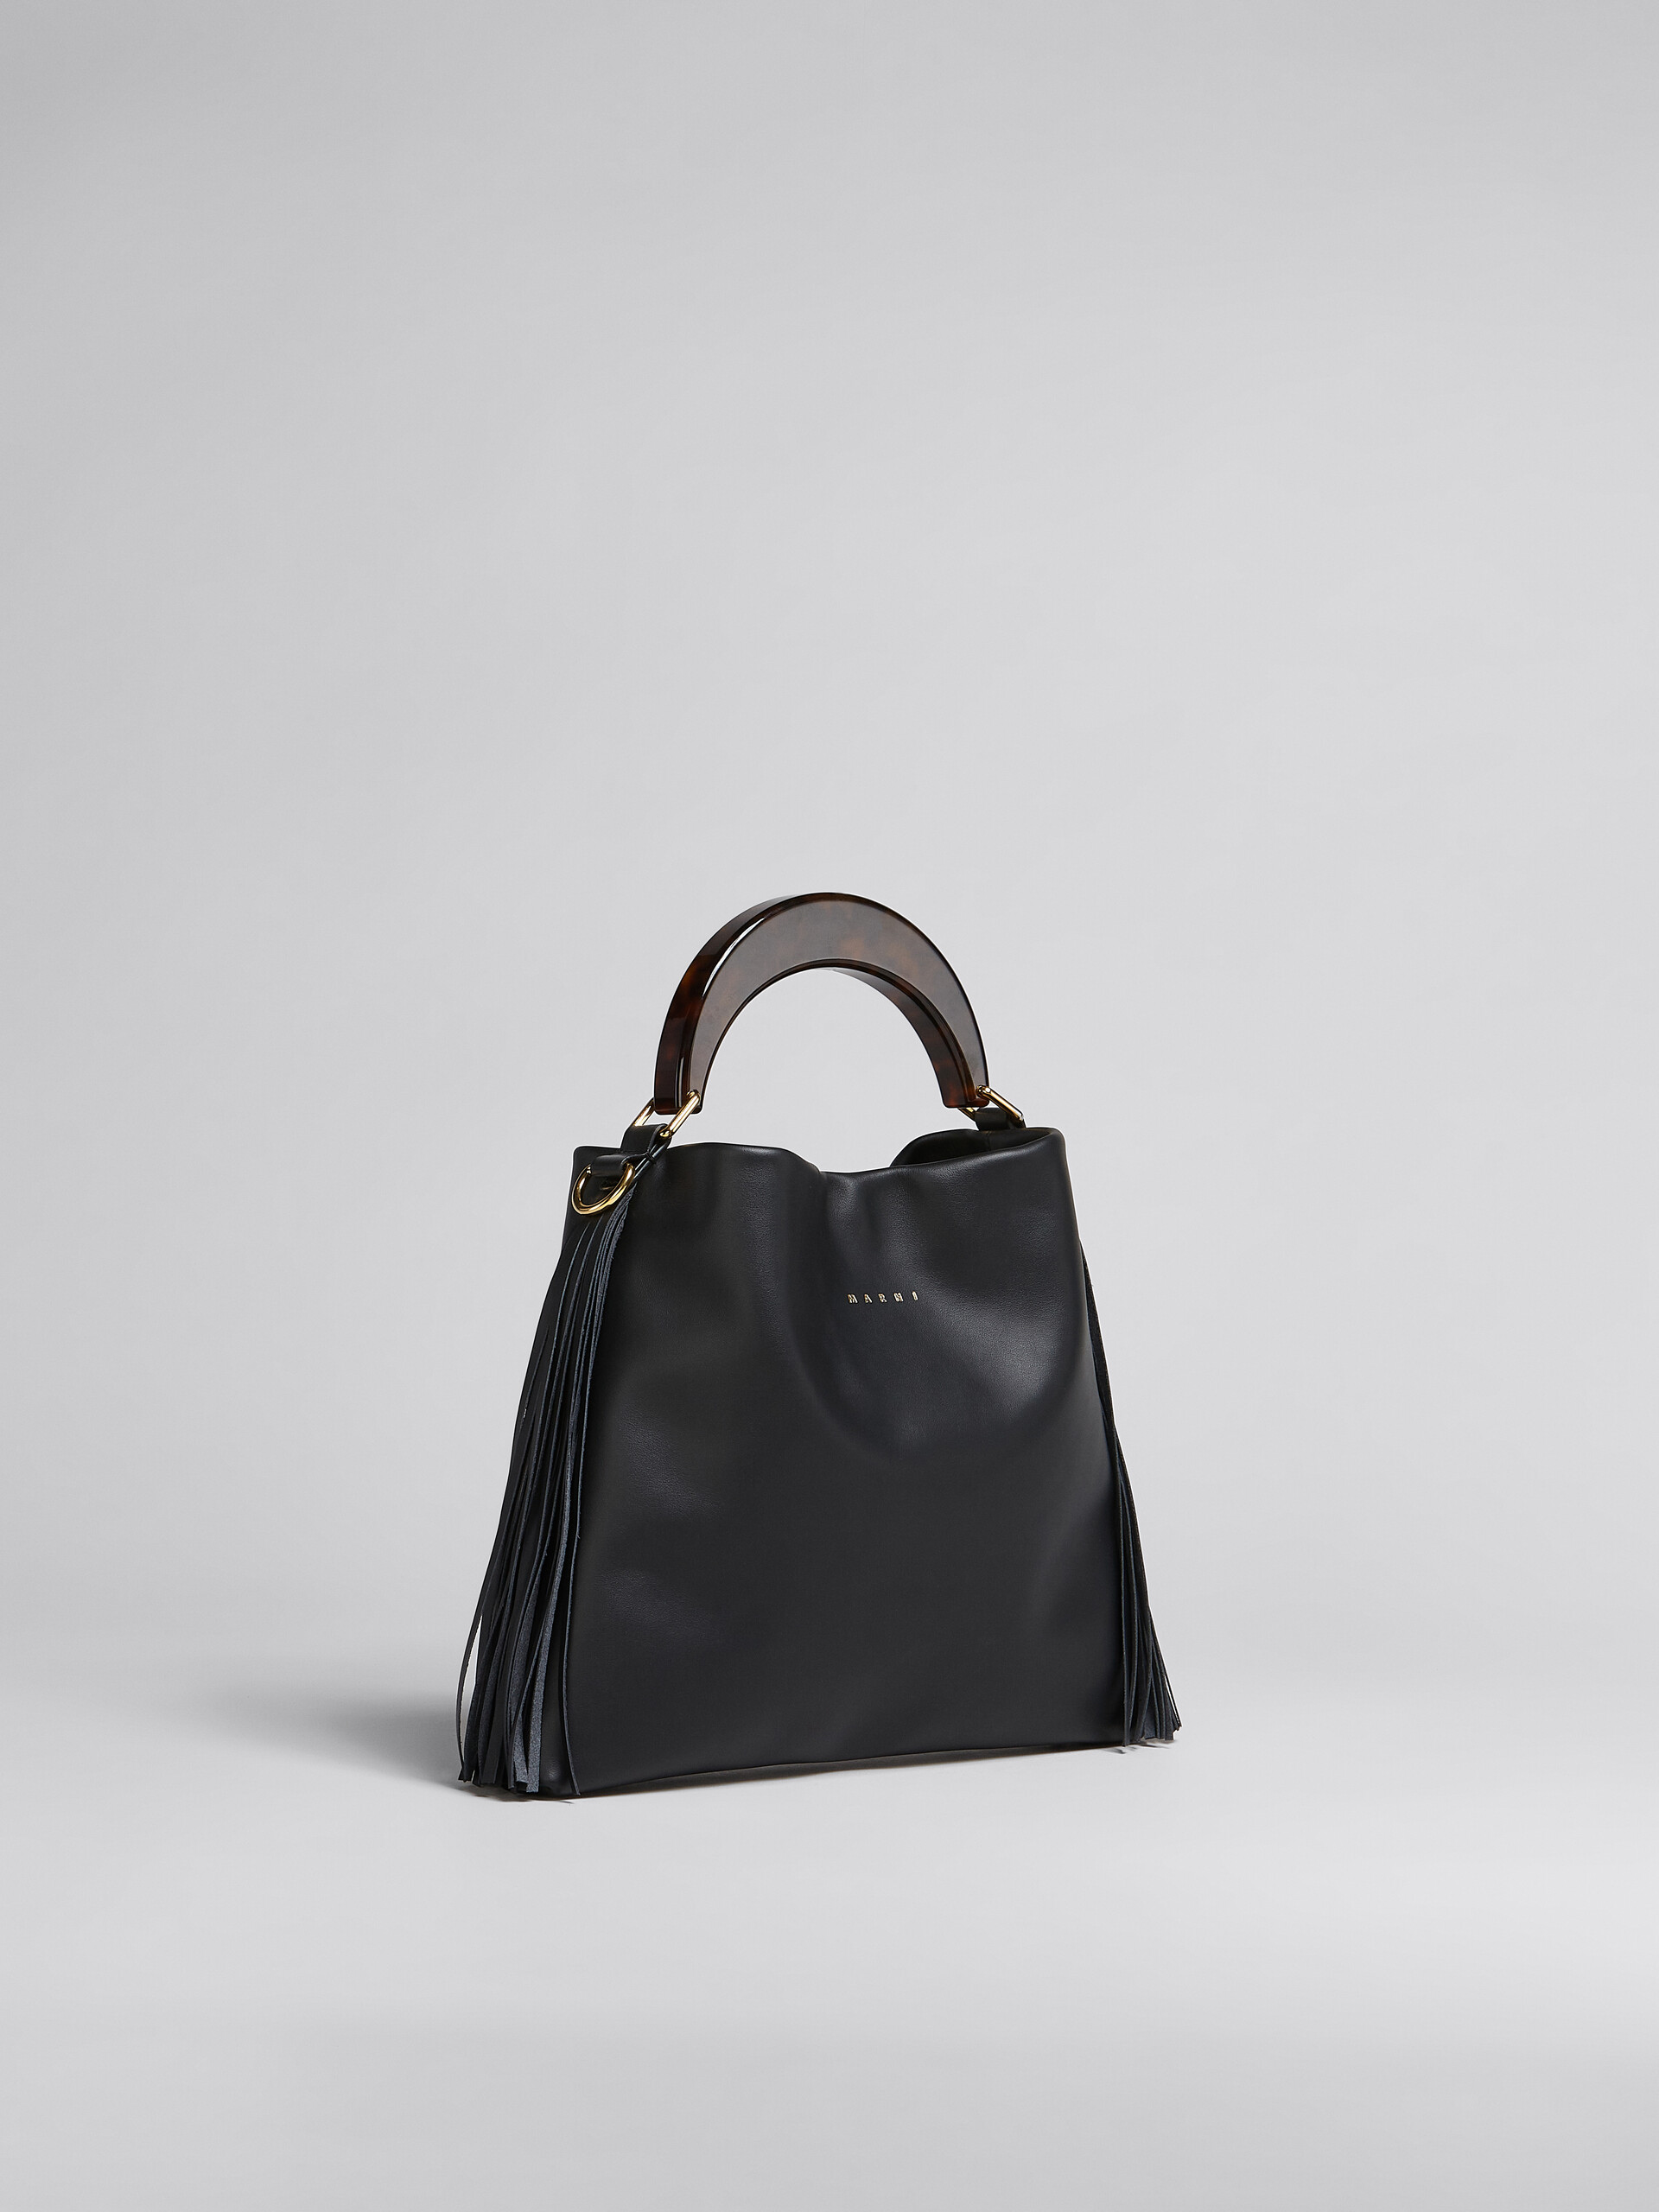 Venice Bag Piccola in pelle nera con frange - Borse a spalla - Image 6